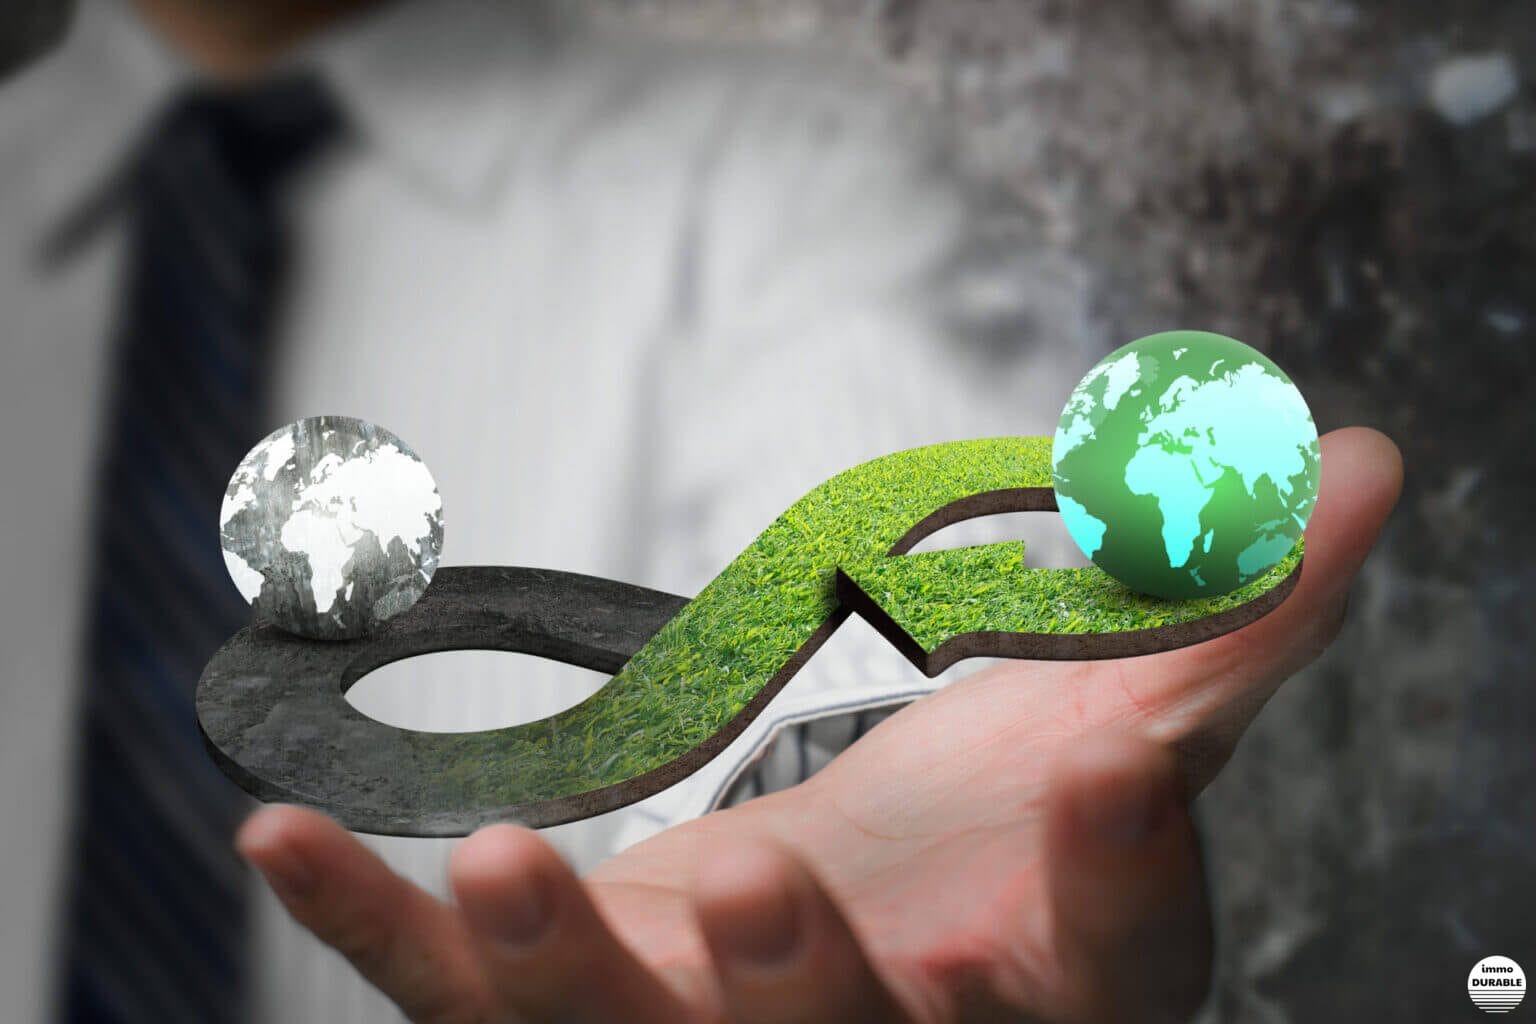 Recyclage et réemploi matériaux biosourcés : nouveaux enjeux de l'économie circulaire